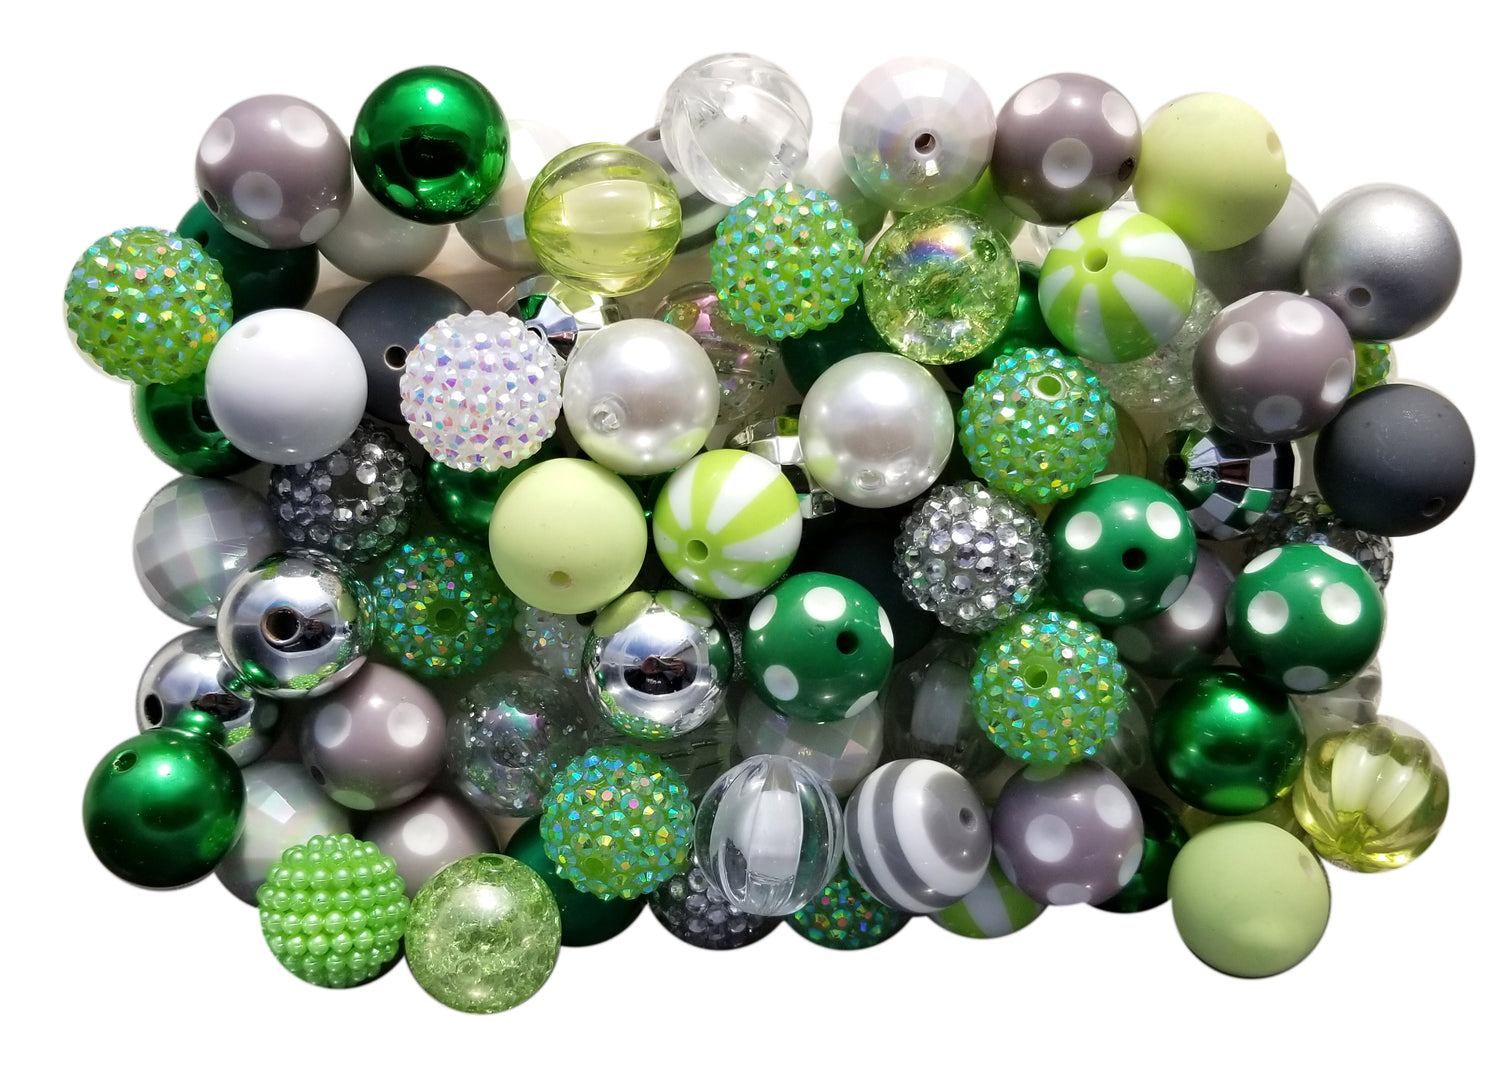 clover fields mixed 20mm bubblegum beads